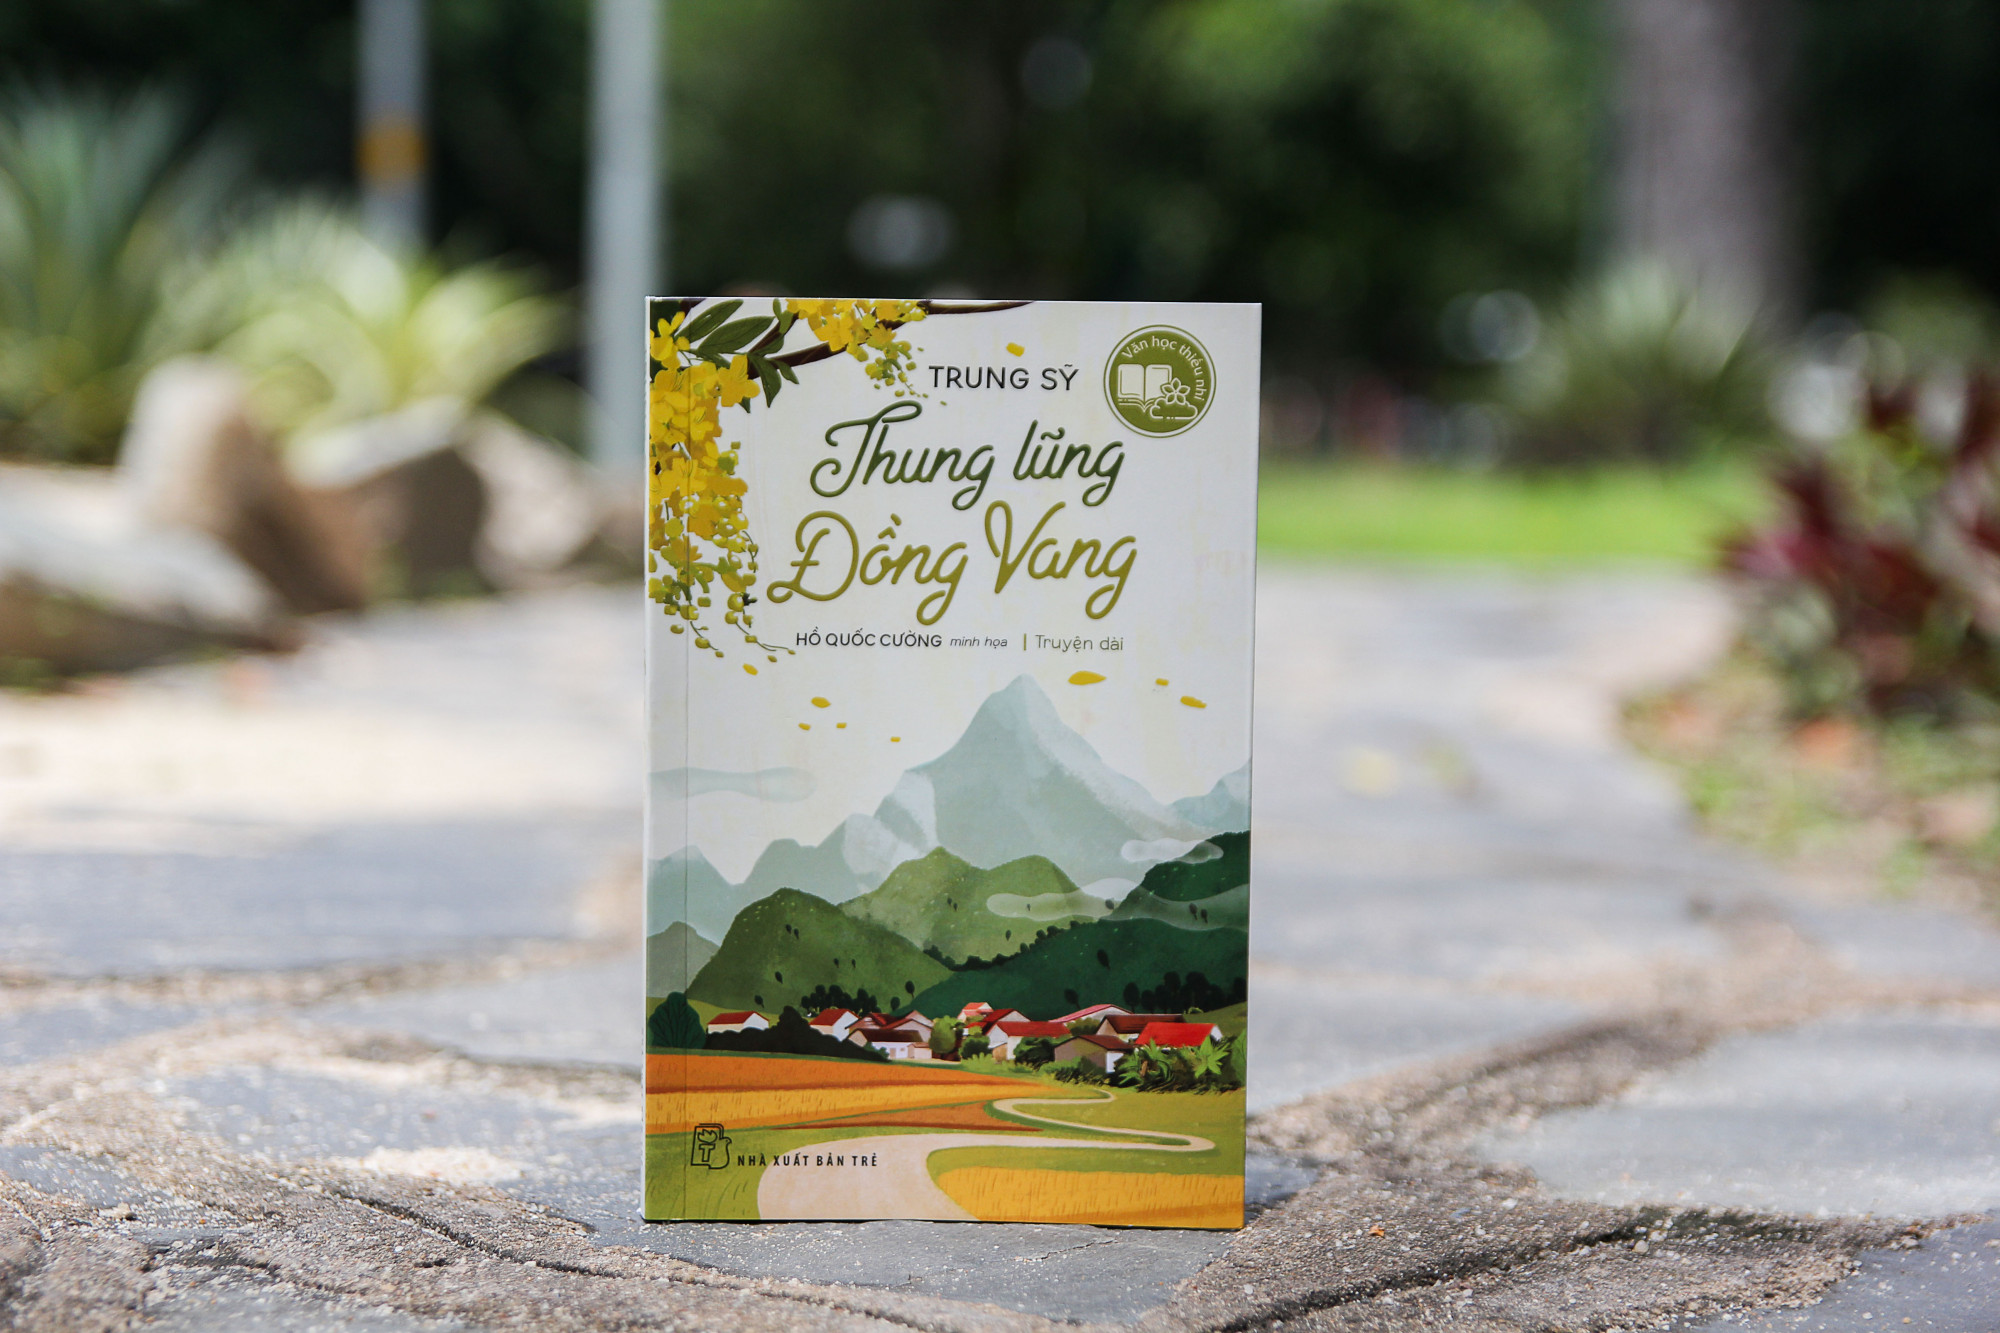 Thung lũng Đồng Vang vừa được nhà xuất bản Trẻ cho ra mắt